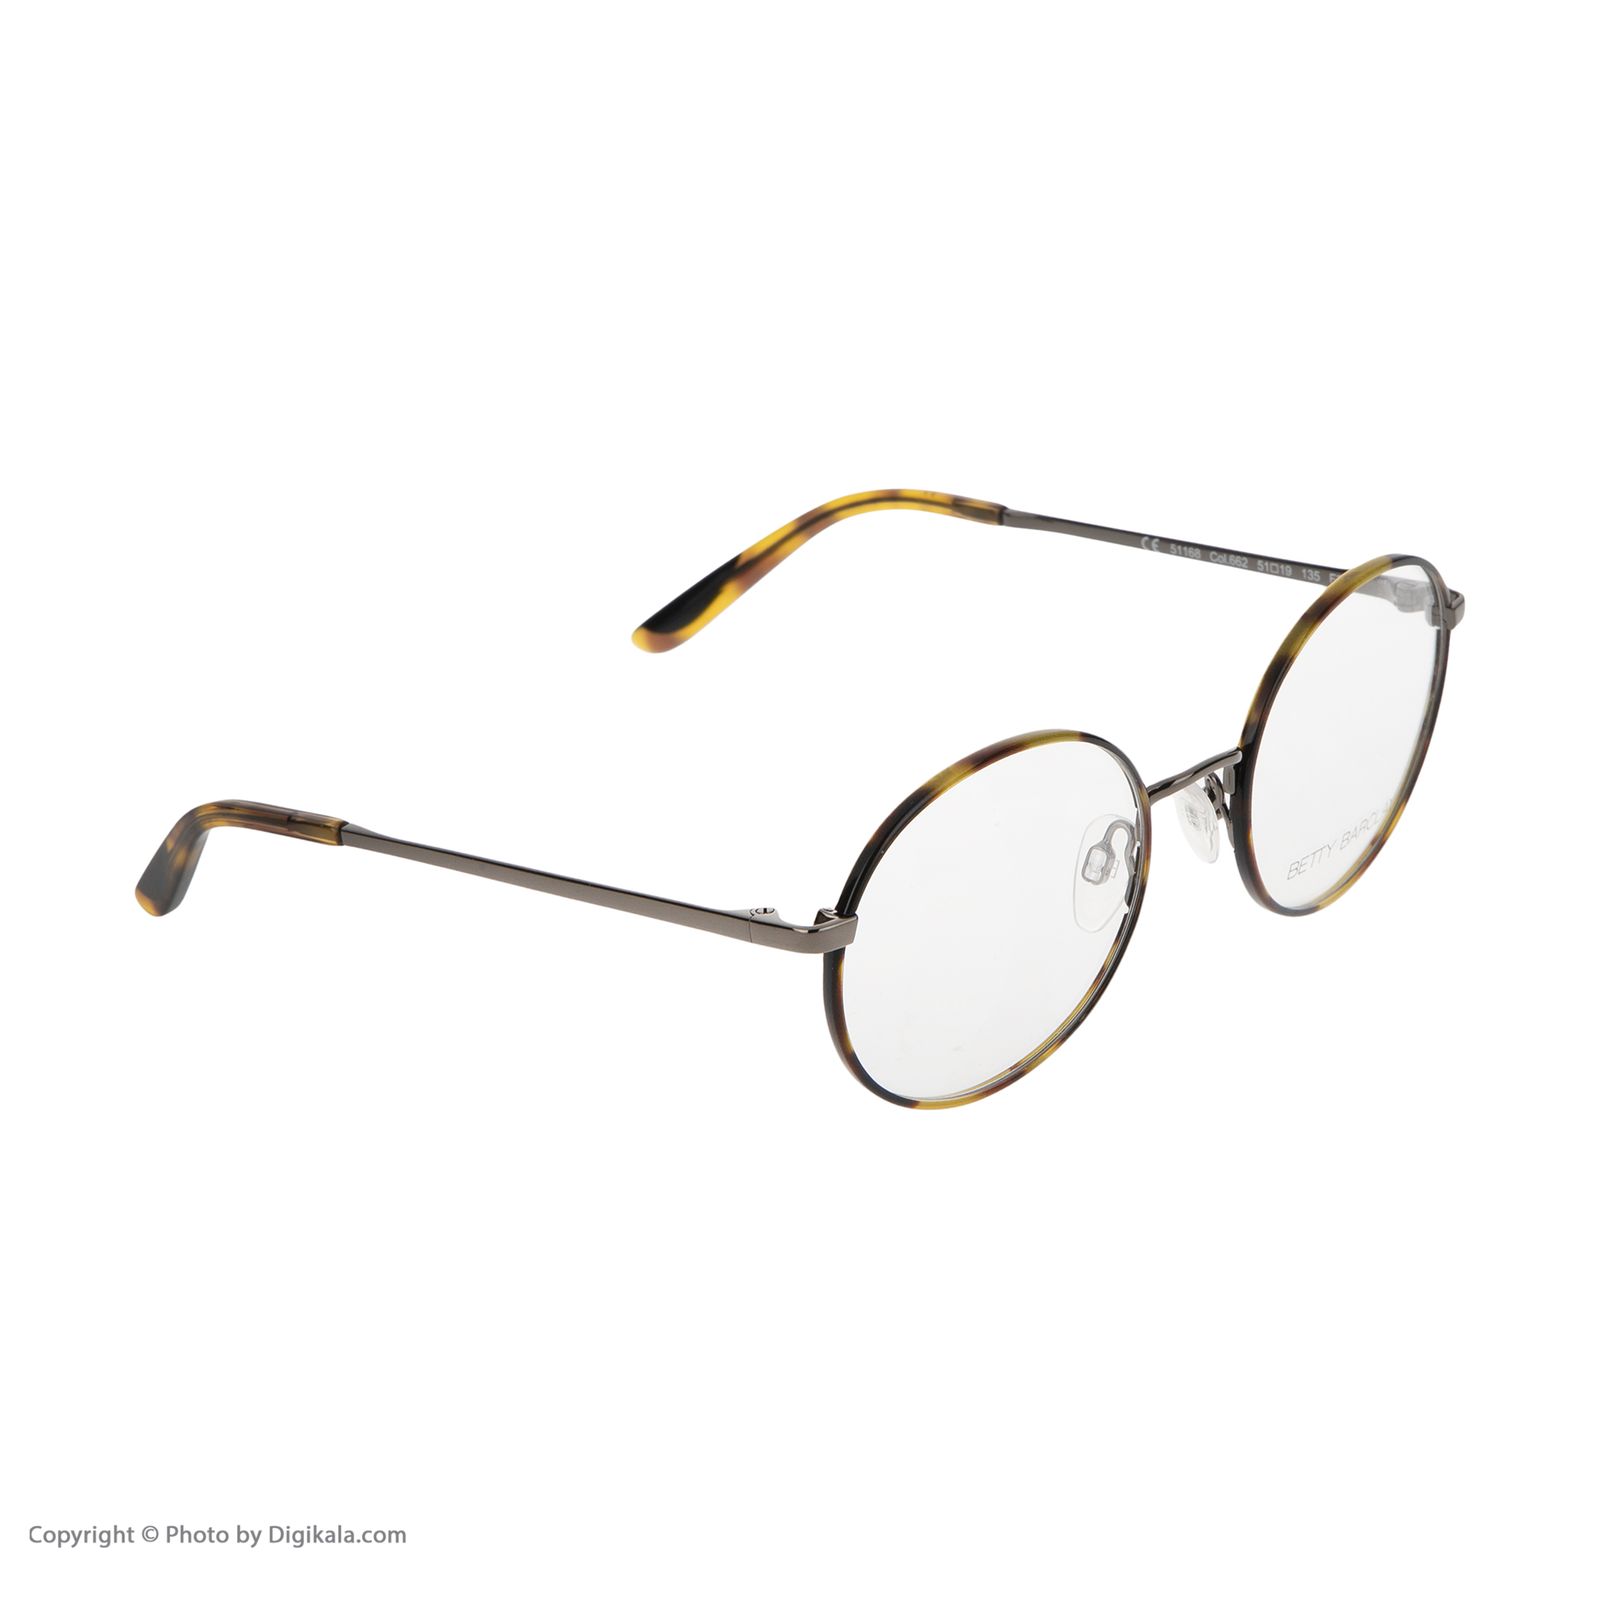 فریم عینک طبی زنانه بتی بارکلی مدل 51168-662 -  - 3